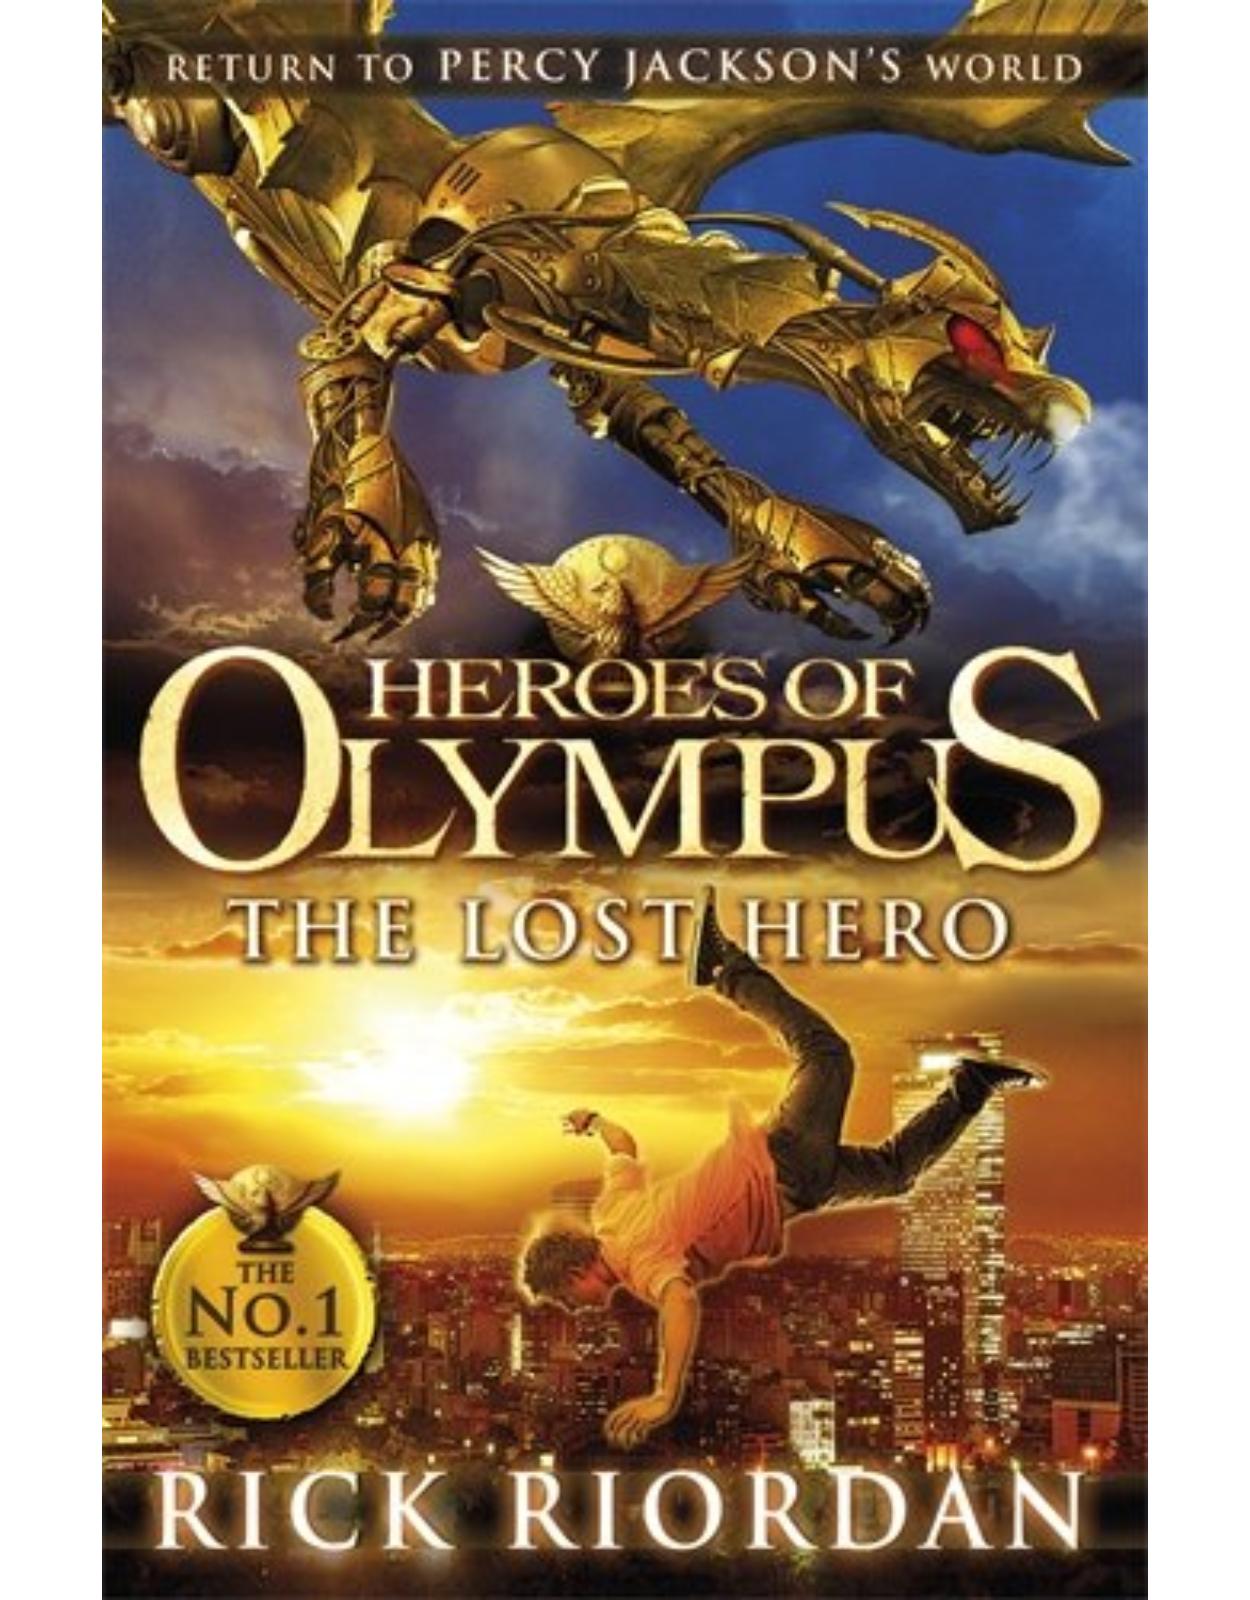 The Lost Hero: The Heroes of Olympus, Book 1